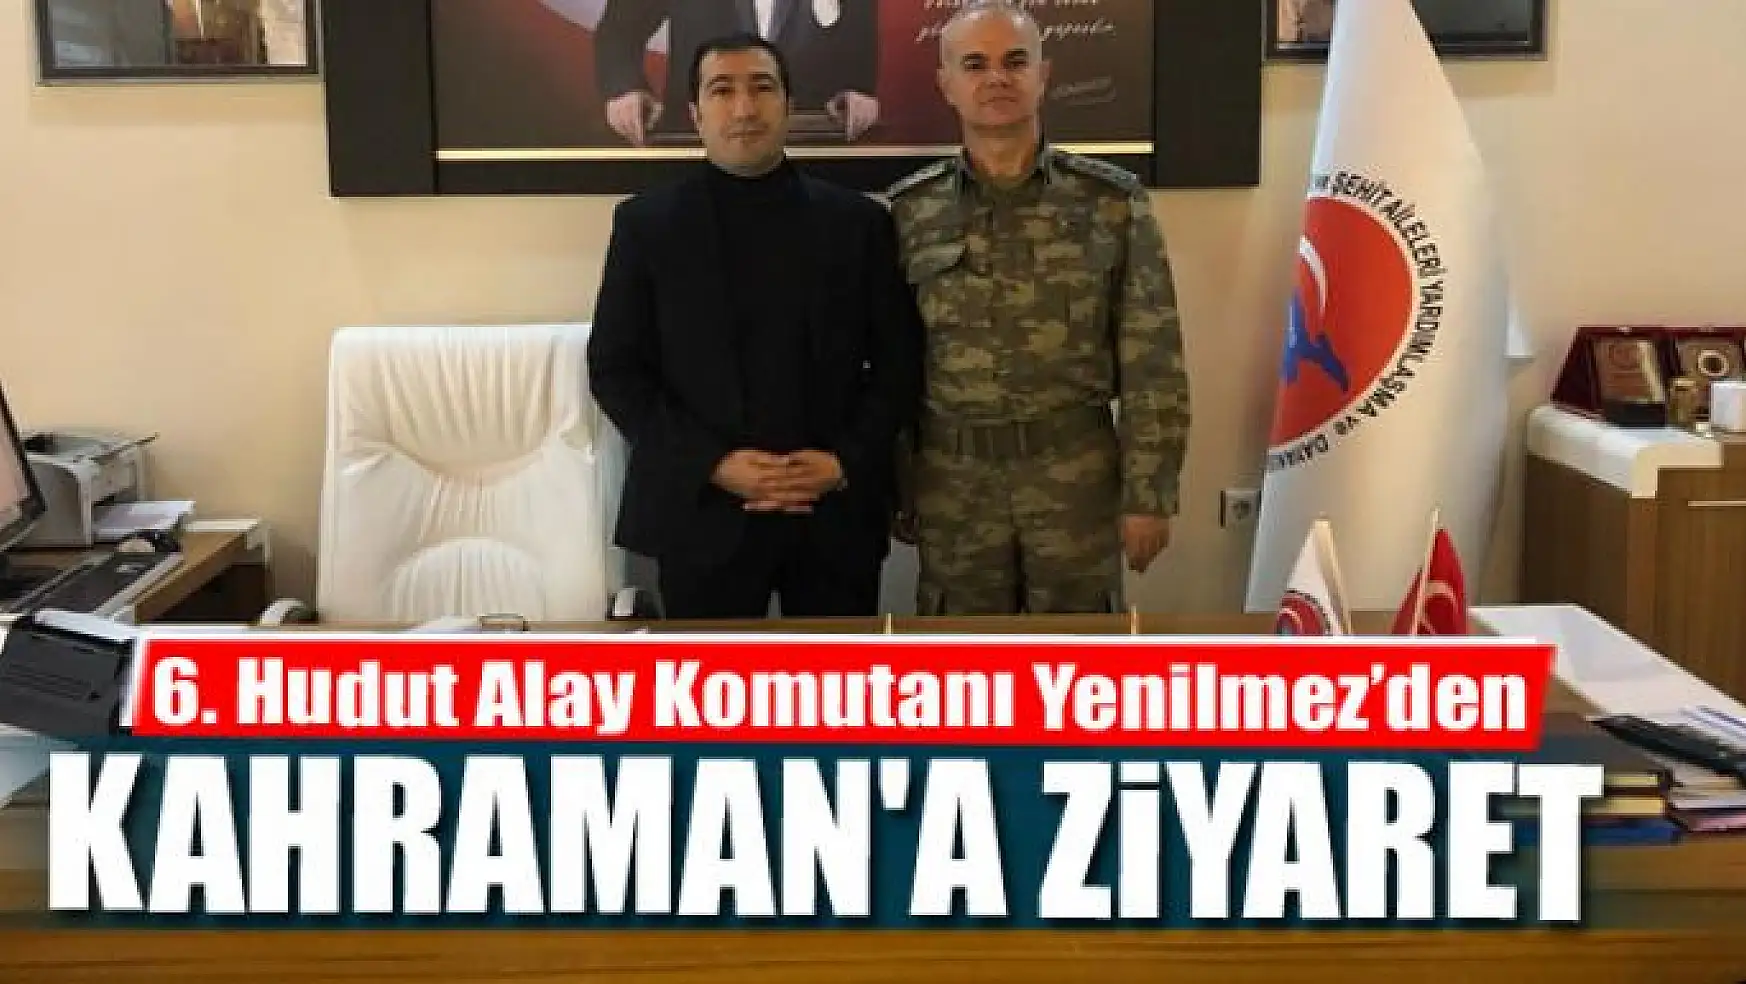 6. Hudut Alay Komutanı Yenilmez'den Başkan Kahraman'a ziyaret